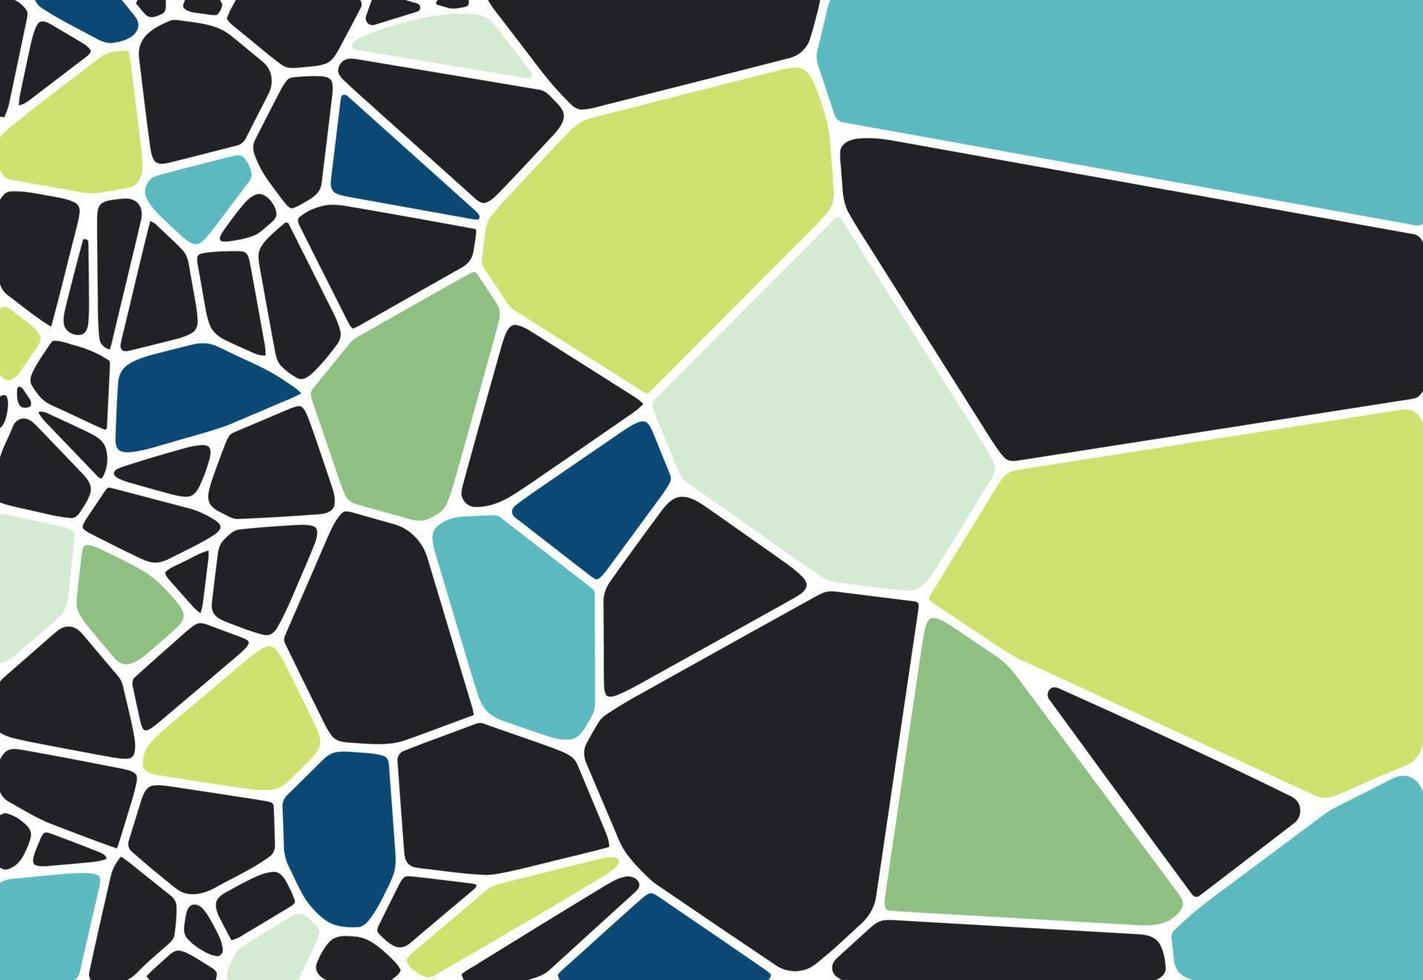 Voronoi diagrama colorido textura de azulejos geométricos, fundo, textura de pedra desenhada à mão, padrão de mosaico de vetor de tecido de impressão